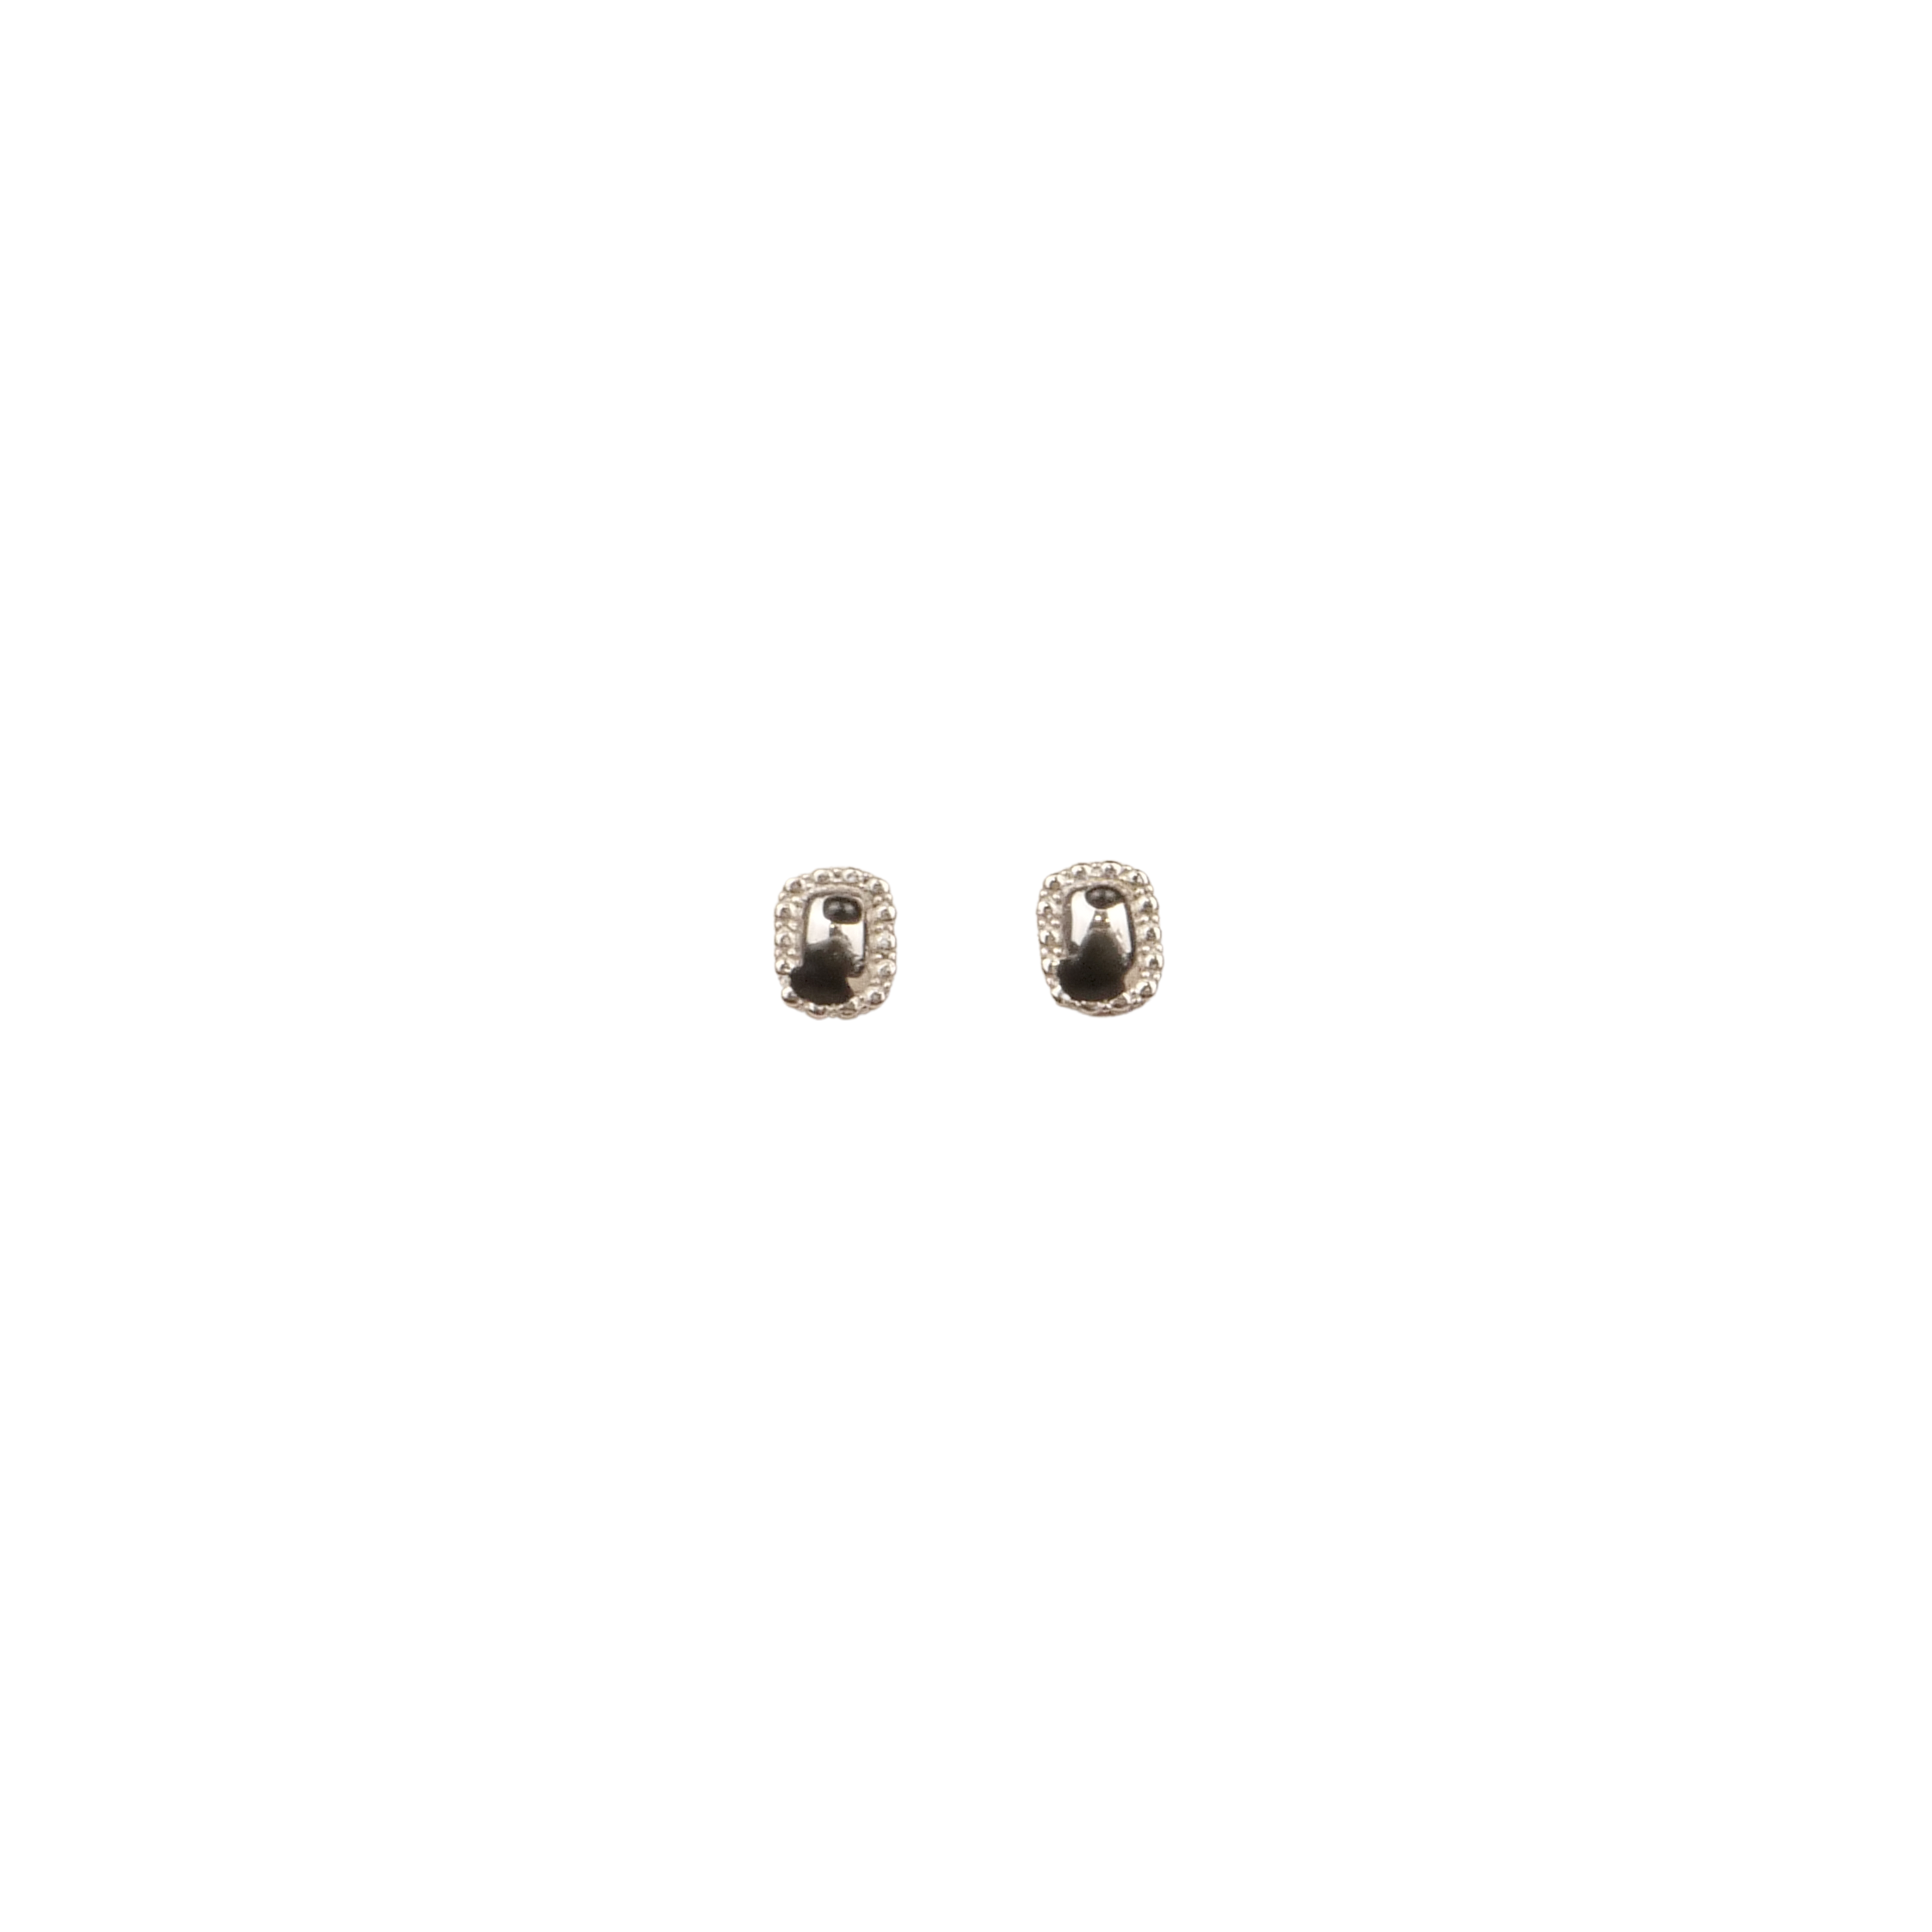 Hanying Sterling Floral Gemstone Gemstone Stud Earrings (Silver)